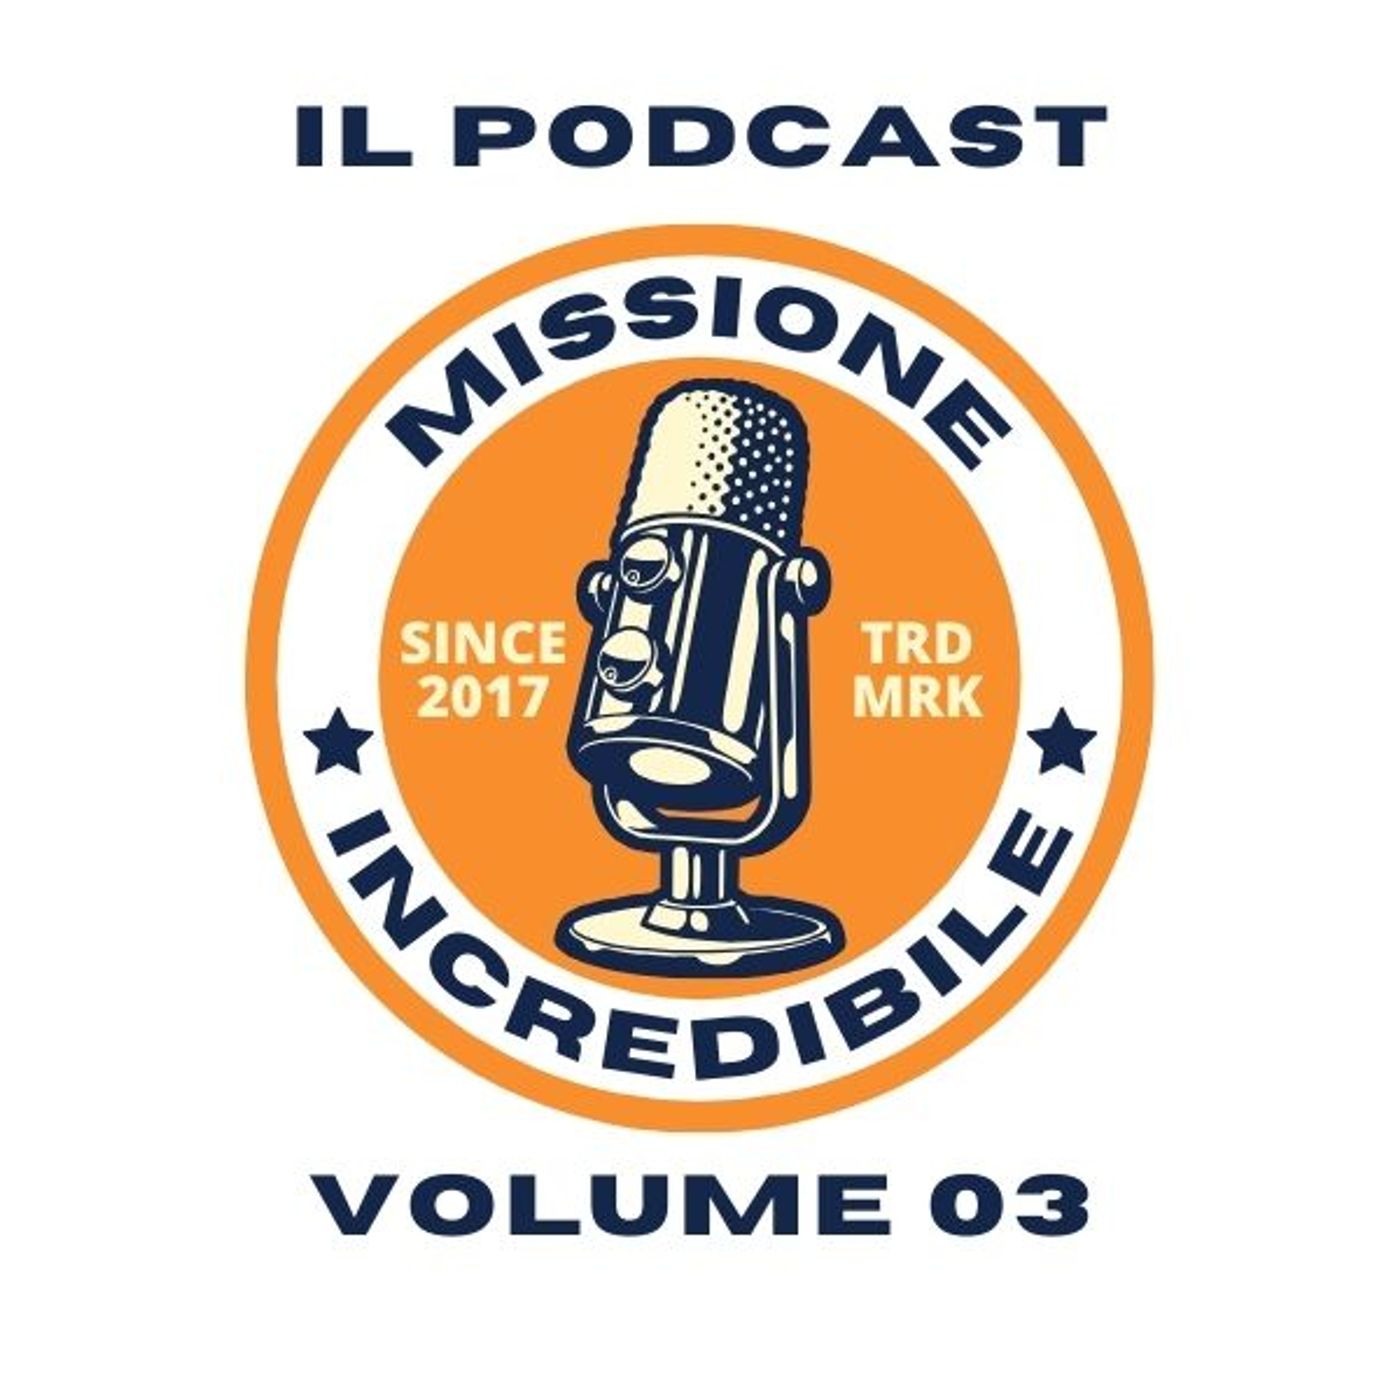 Missione Incredibile, il Podcast, Volume 03